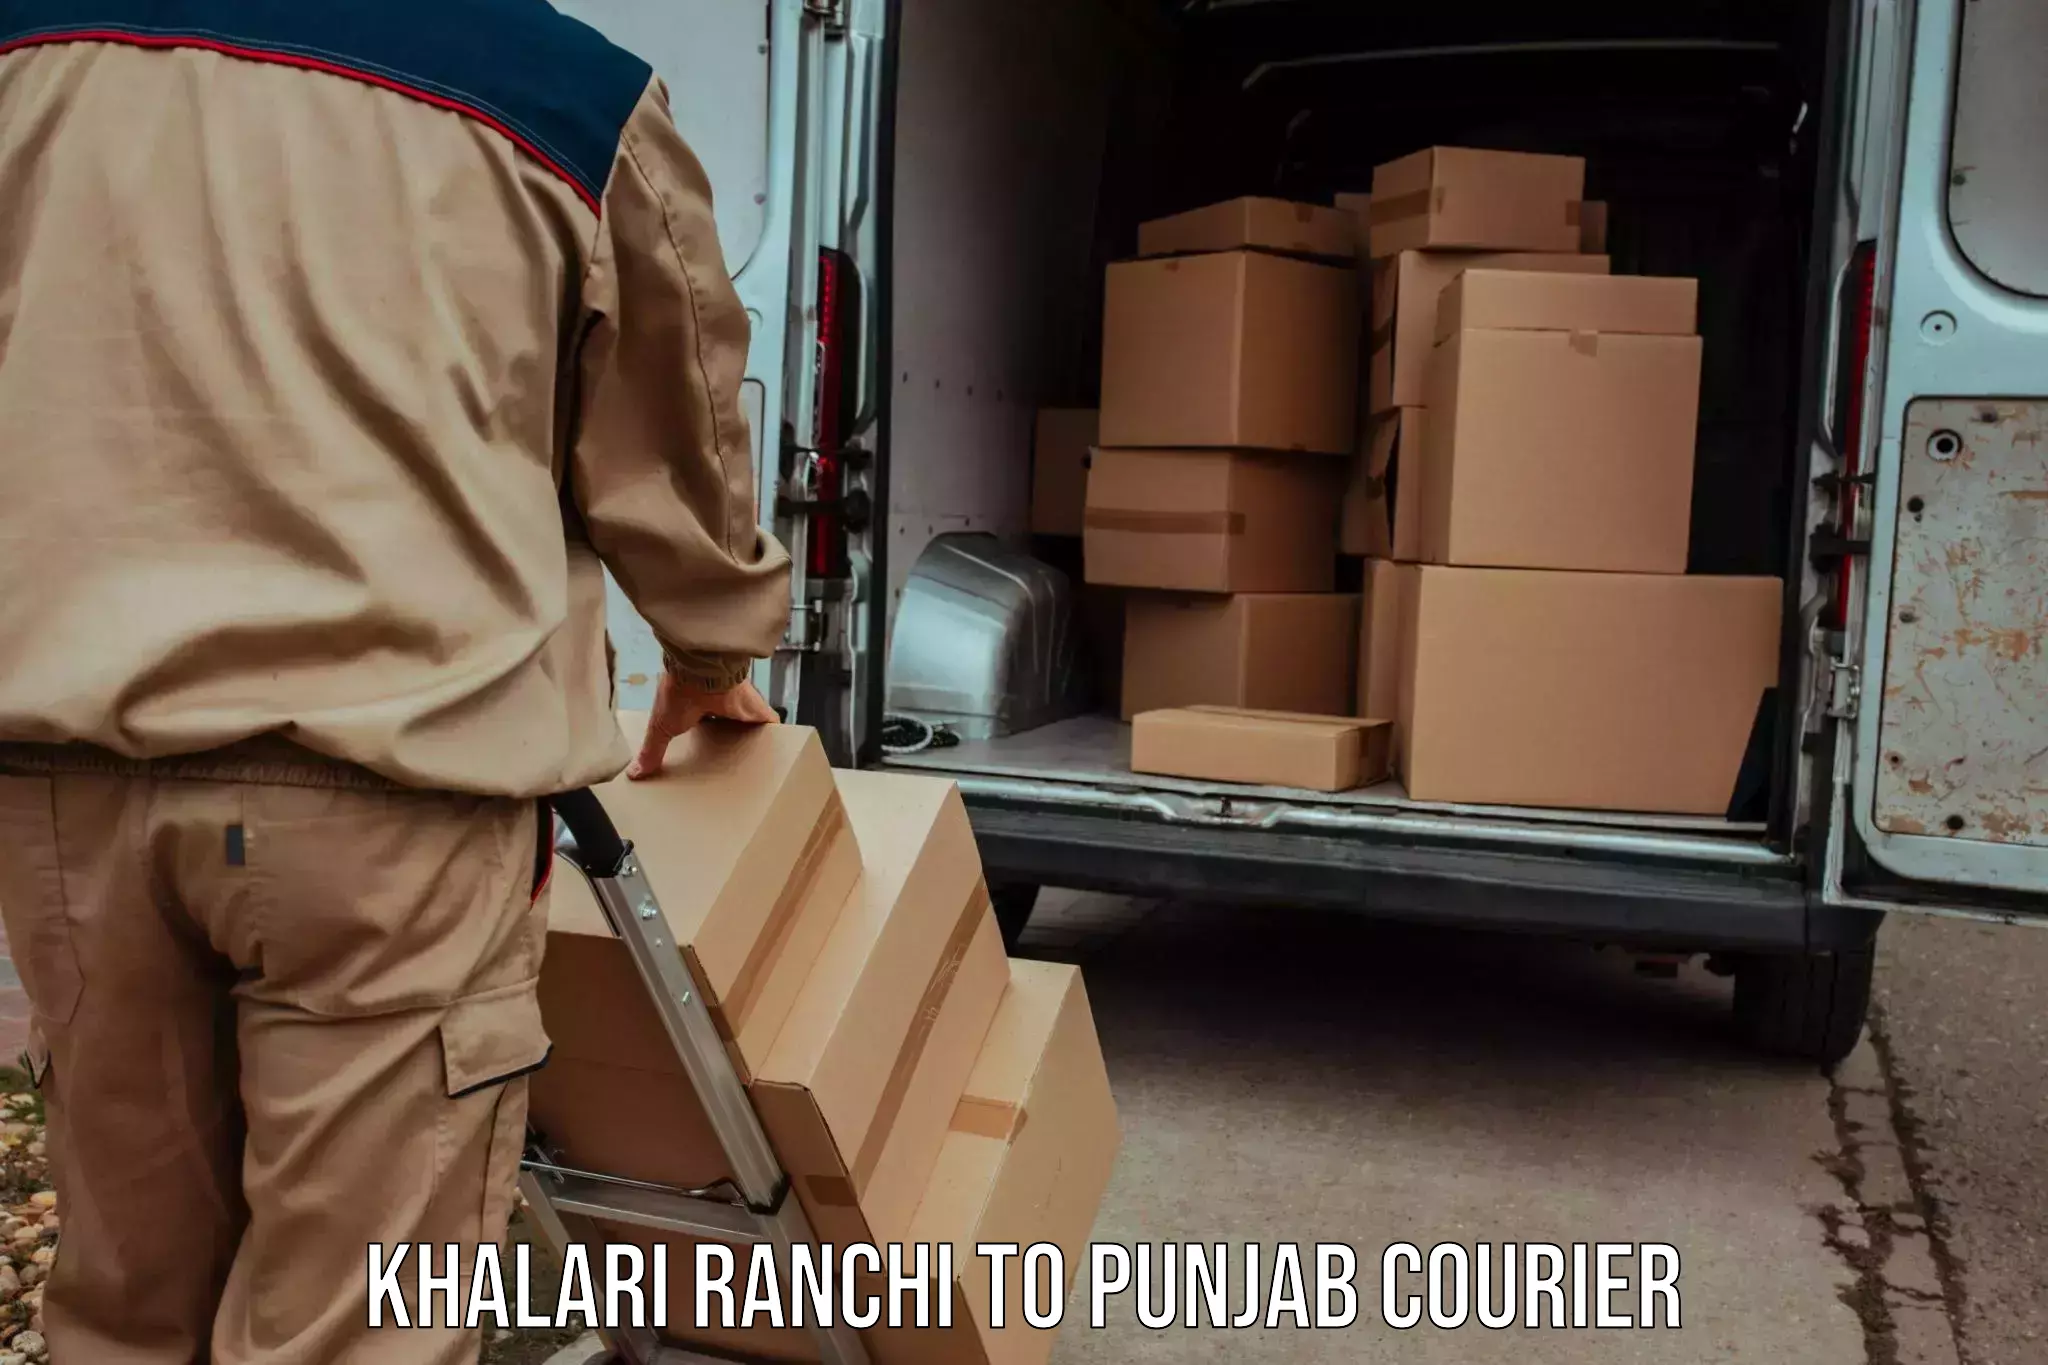 Courier service comparison Khalari Ranchi to Punjab